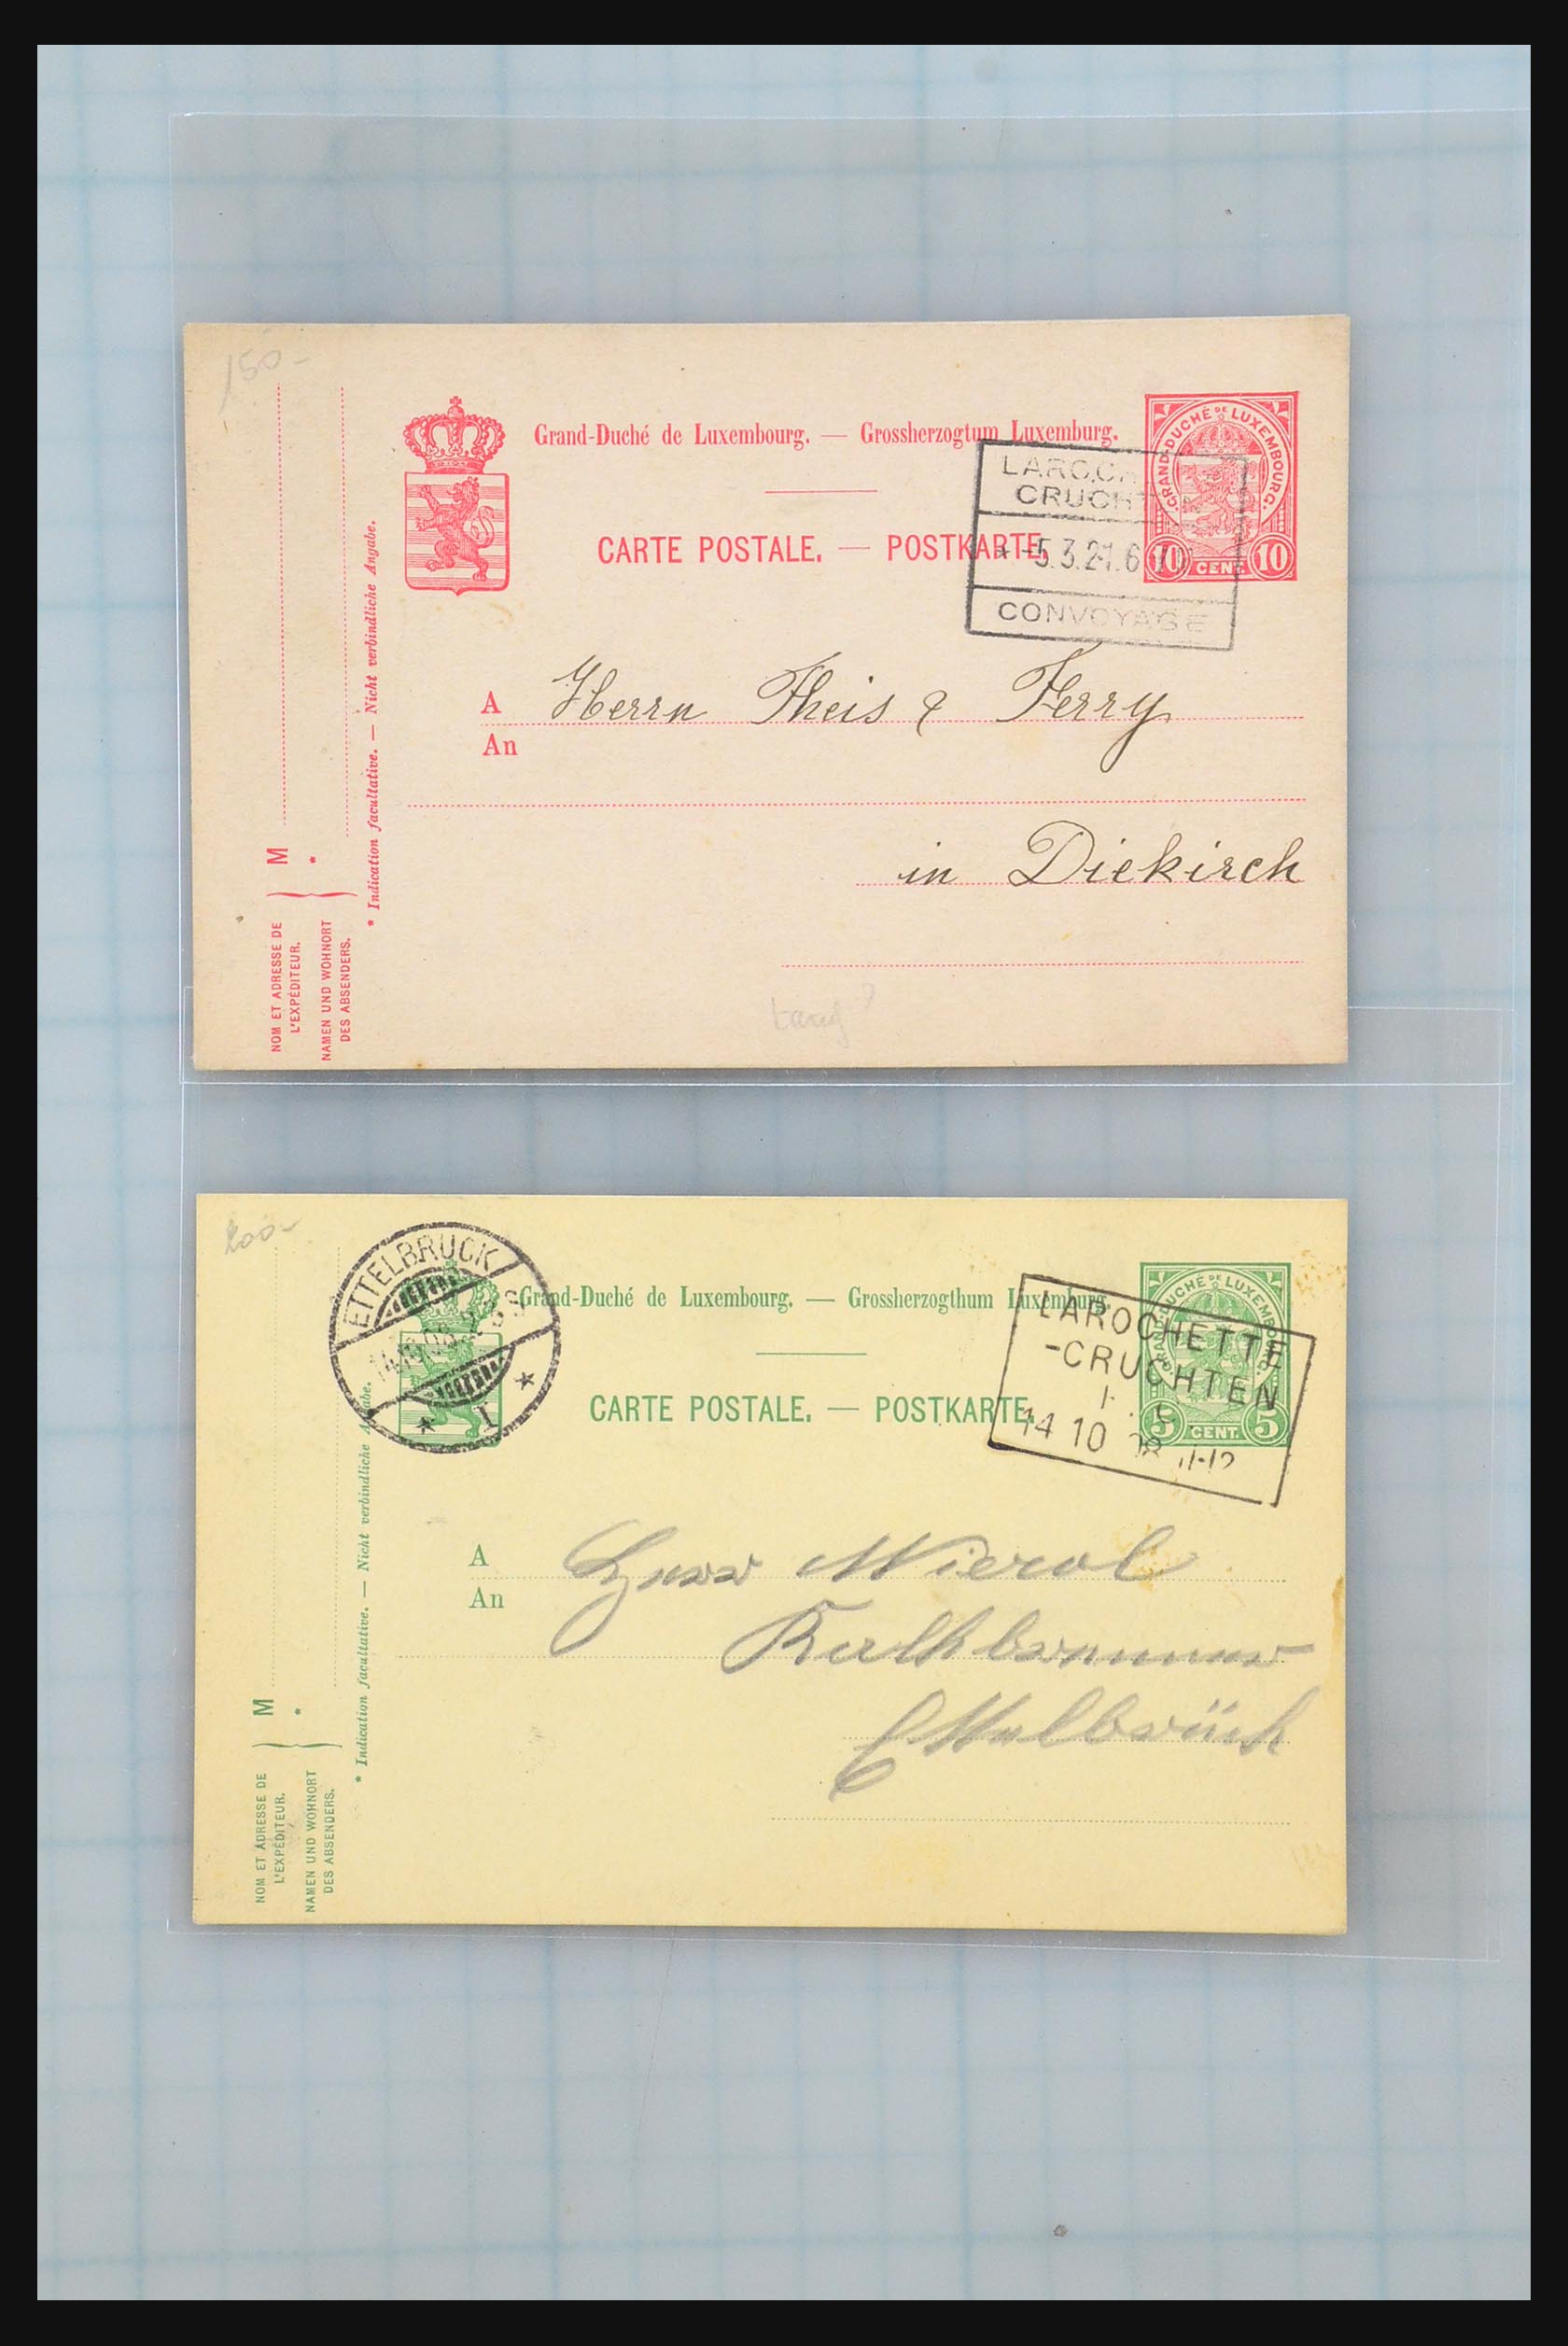 31358 052 - 31358 Portugal/Luxemburg/Griekenland brieven 1880-1960.